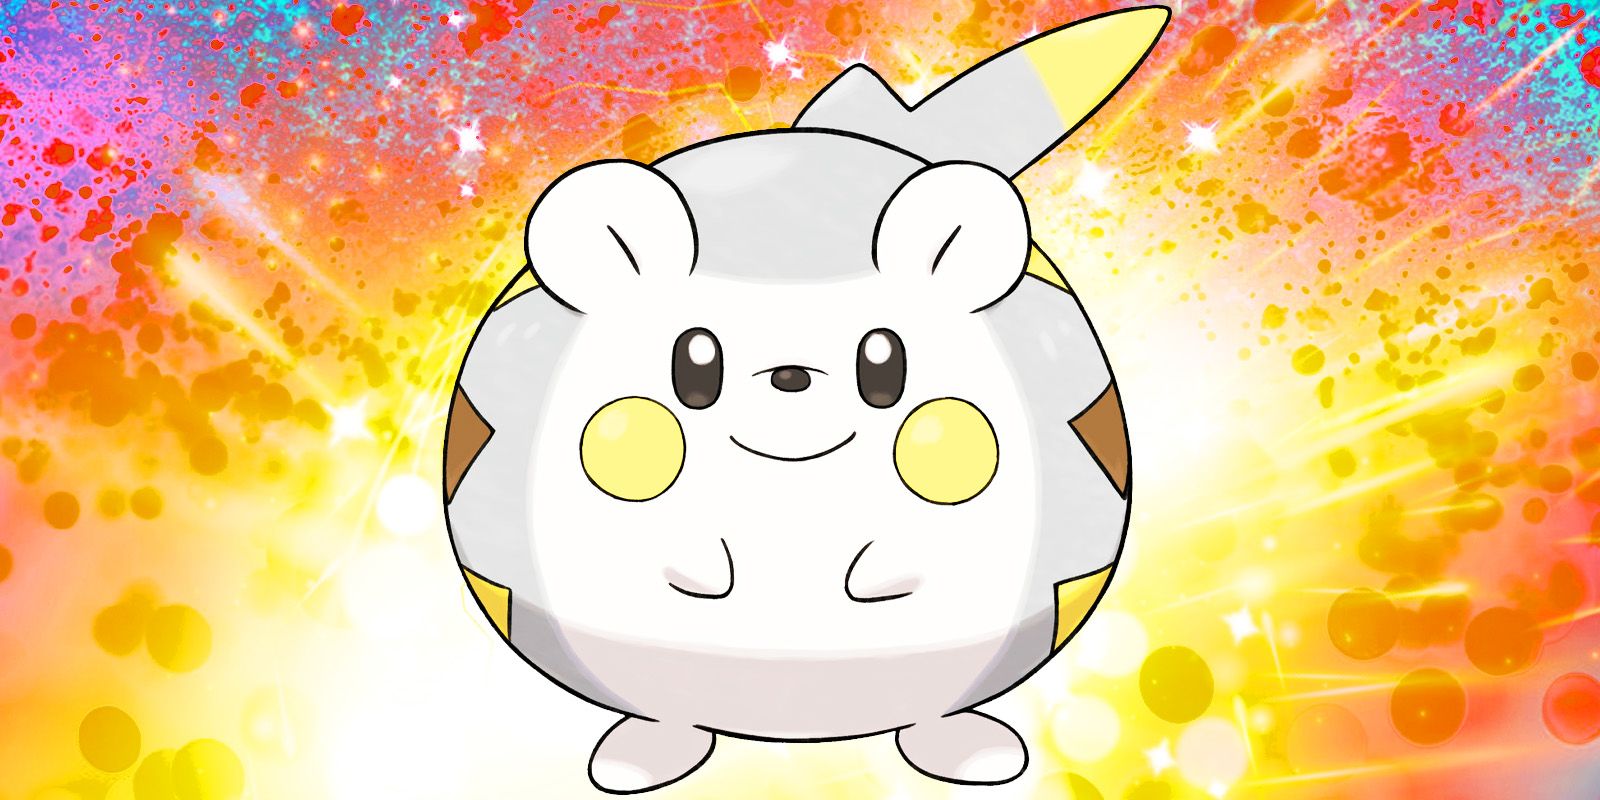 Pokémon GO Togedemaru: disponibilidad, tipos y movimientos shiny